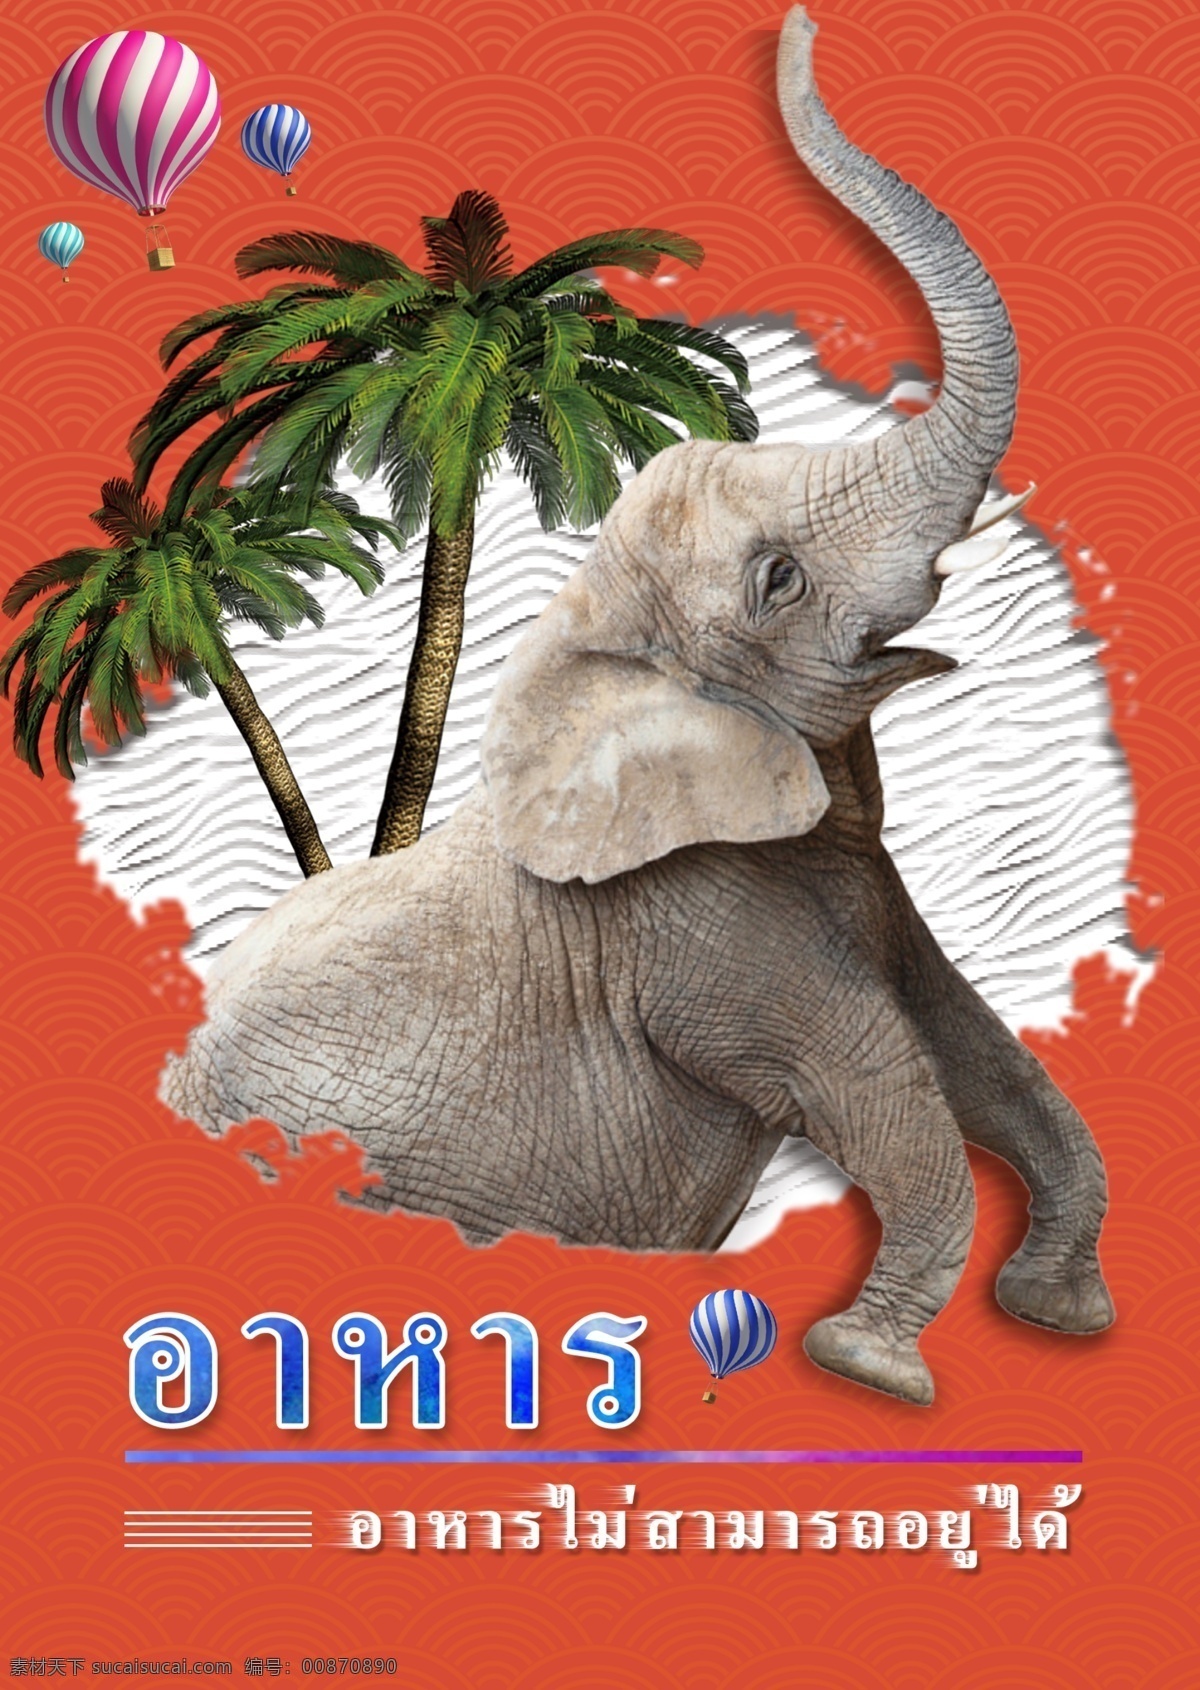 泰国 动物 大象 椰子树 手绘 泰国风格 游览 风景区 象 热气球 海报